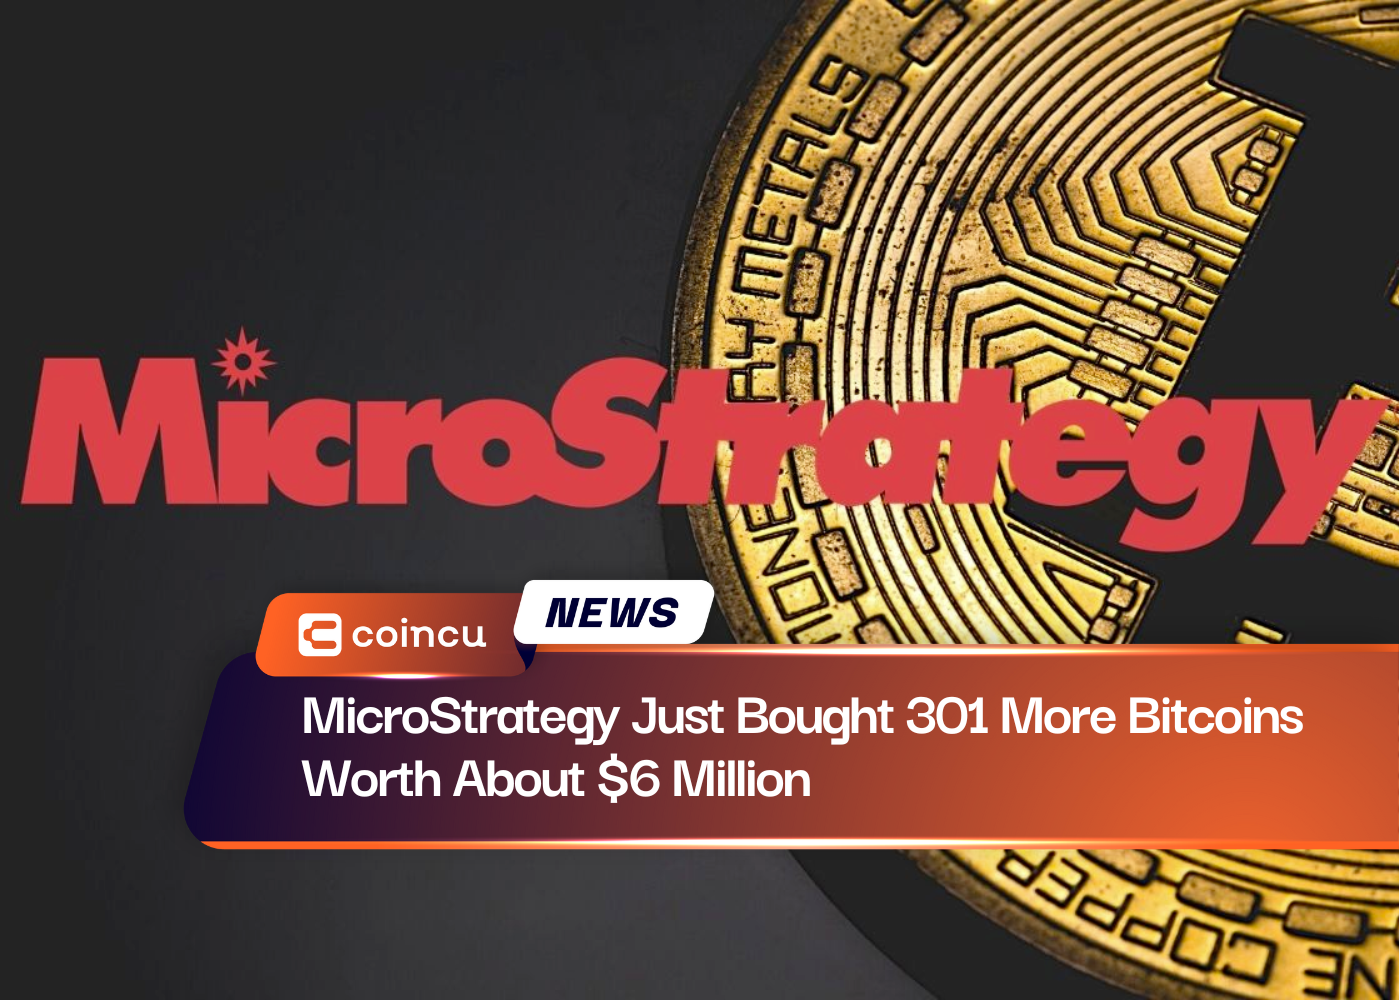 MicroStrategy hat gerade 301 weitere Bitcoins im Wert von etwa 6 Millionen US-Dollar gekauft